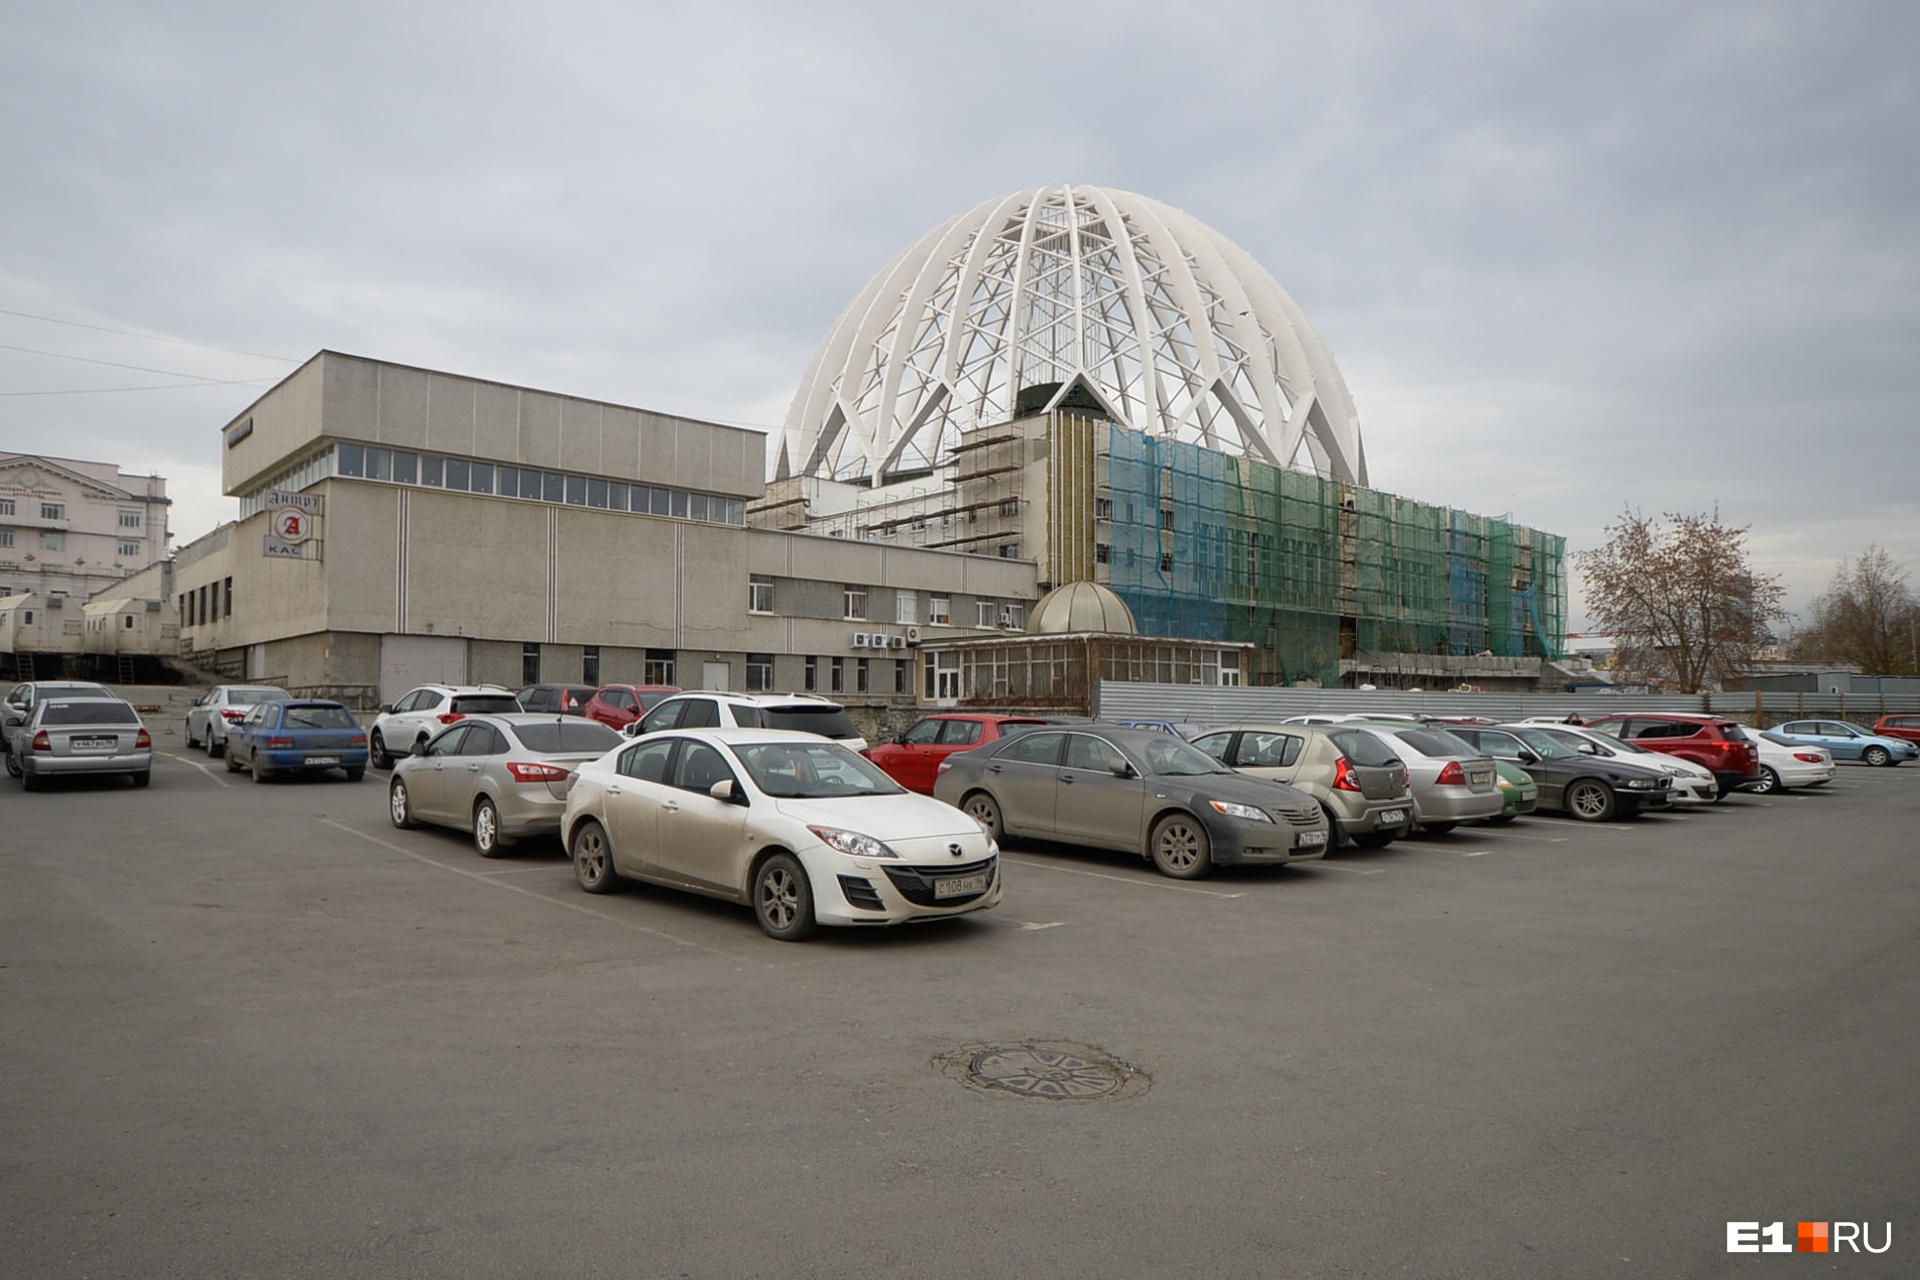 Правительство России выделило 2,4 миллиарда на реконструкцию екатеринбургского цирка